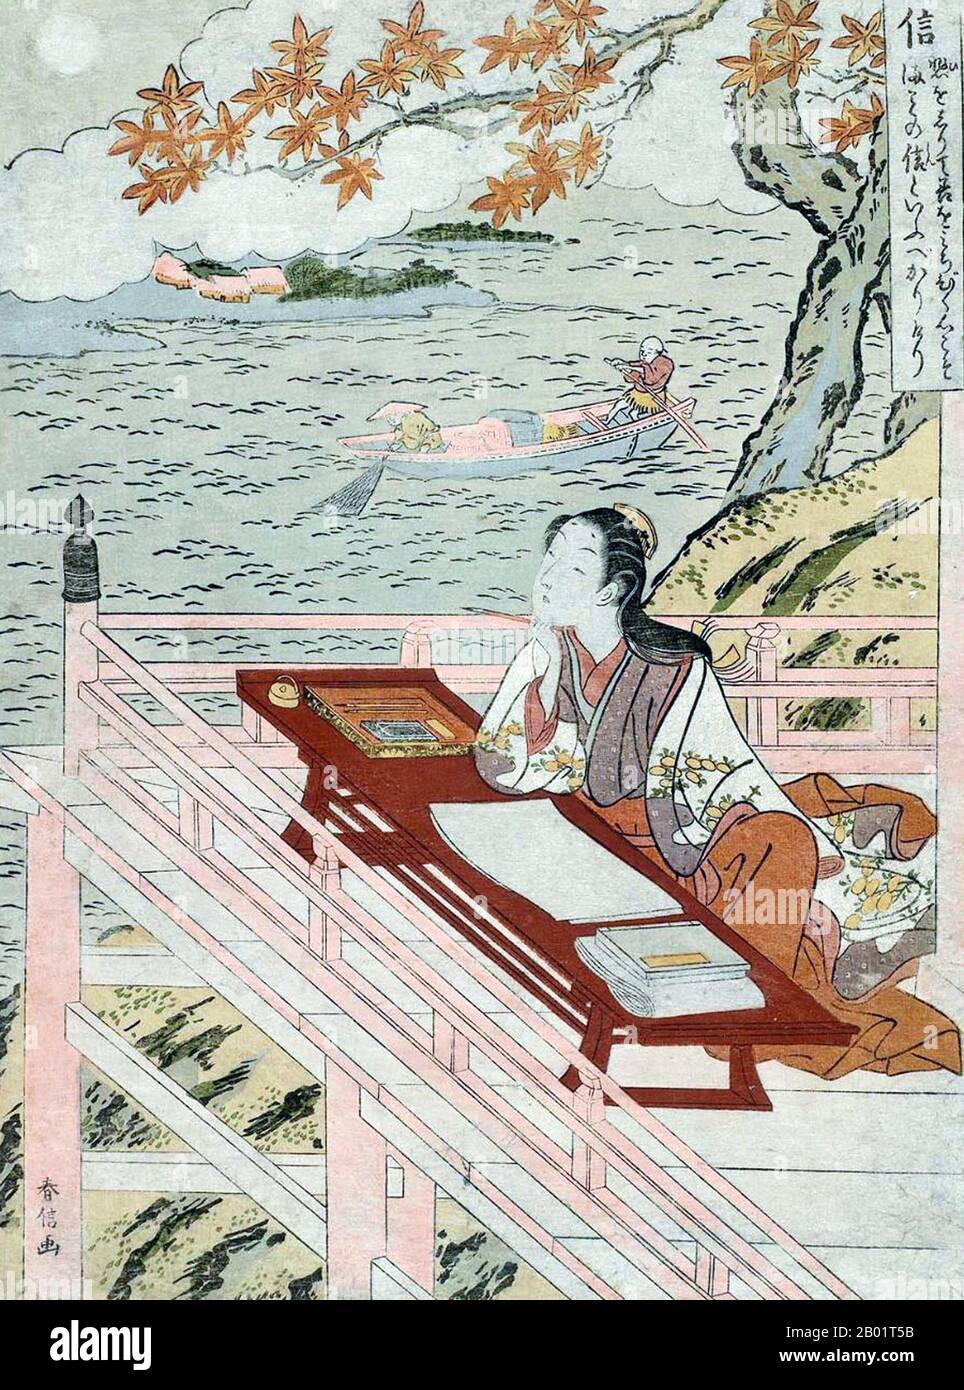 Japan: Lady Murasaki Shikibu (ca. 973–1025), Dichterin und Schriftstellerin bei Ishiyama-dera. Ukiyo-e Holzschnitt von Harunobu Suzuki (1727 - 29. Juni 1770), ca. 1767. Murasaki Shikibu war eine japanische Schriftstellerin, Dichterin und Hofdame während der Heian-Zeit. Sie ist bekannt als die Autorin der Geschichte von Genji, die zwischen 1000 und 1012 auf Japanisch geschrieben wurde. Murasaki Shikibu ist ein Spitzname; ihr richtiger Name ist unbekannt, aber sie könnte Fujiwara Takako gewesen sein, die 1007 in einem Tagebuch des Hofes als kaiserliche Dame in Warten erwähnt wurde. Stockfoto